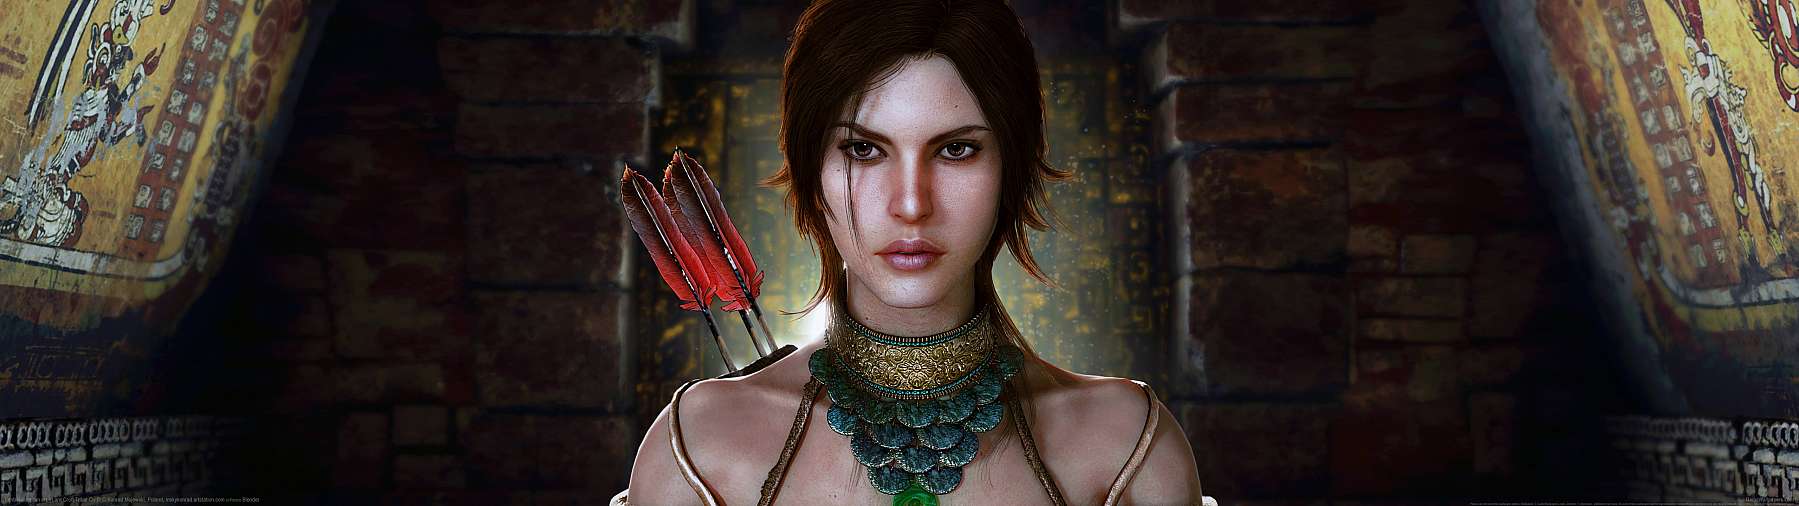 Tomb Raider fan art superwide achtergrond 10